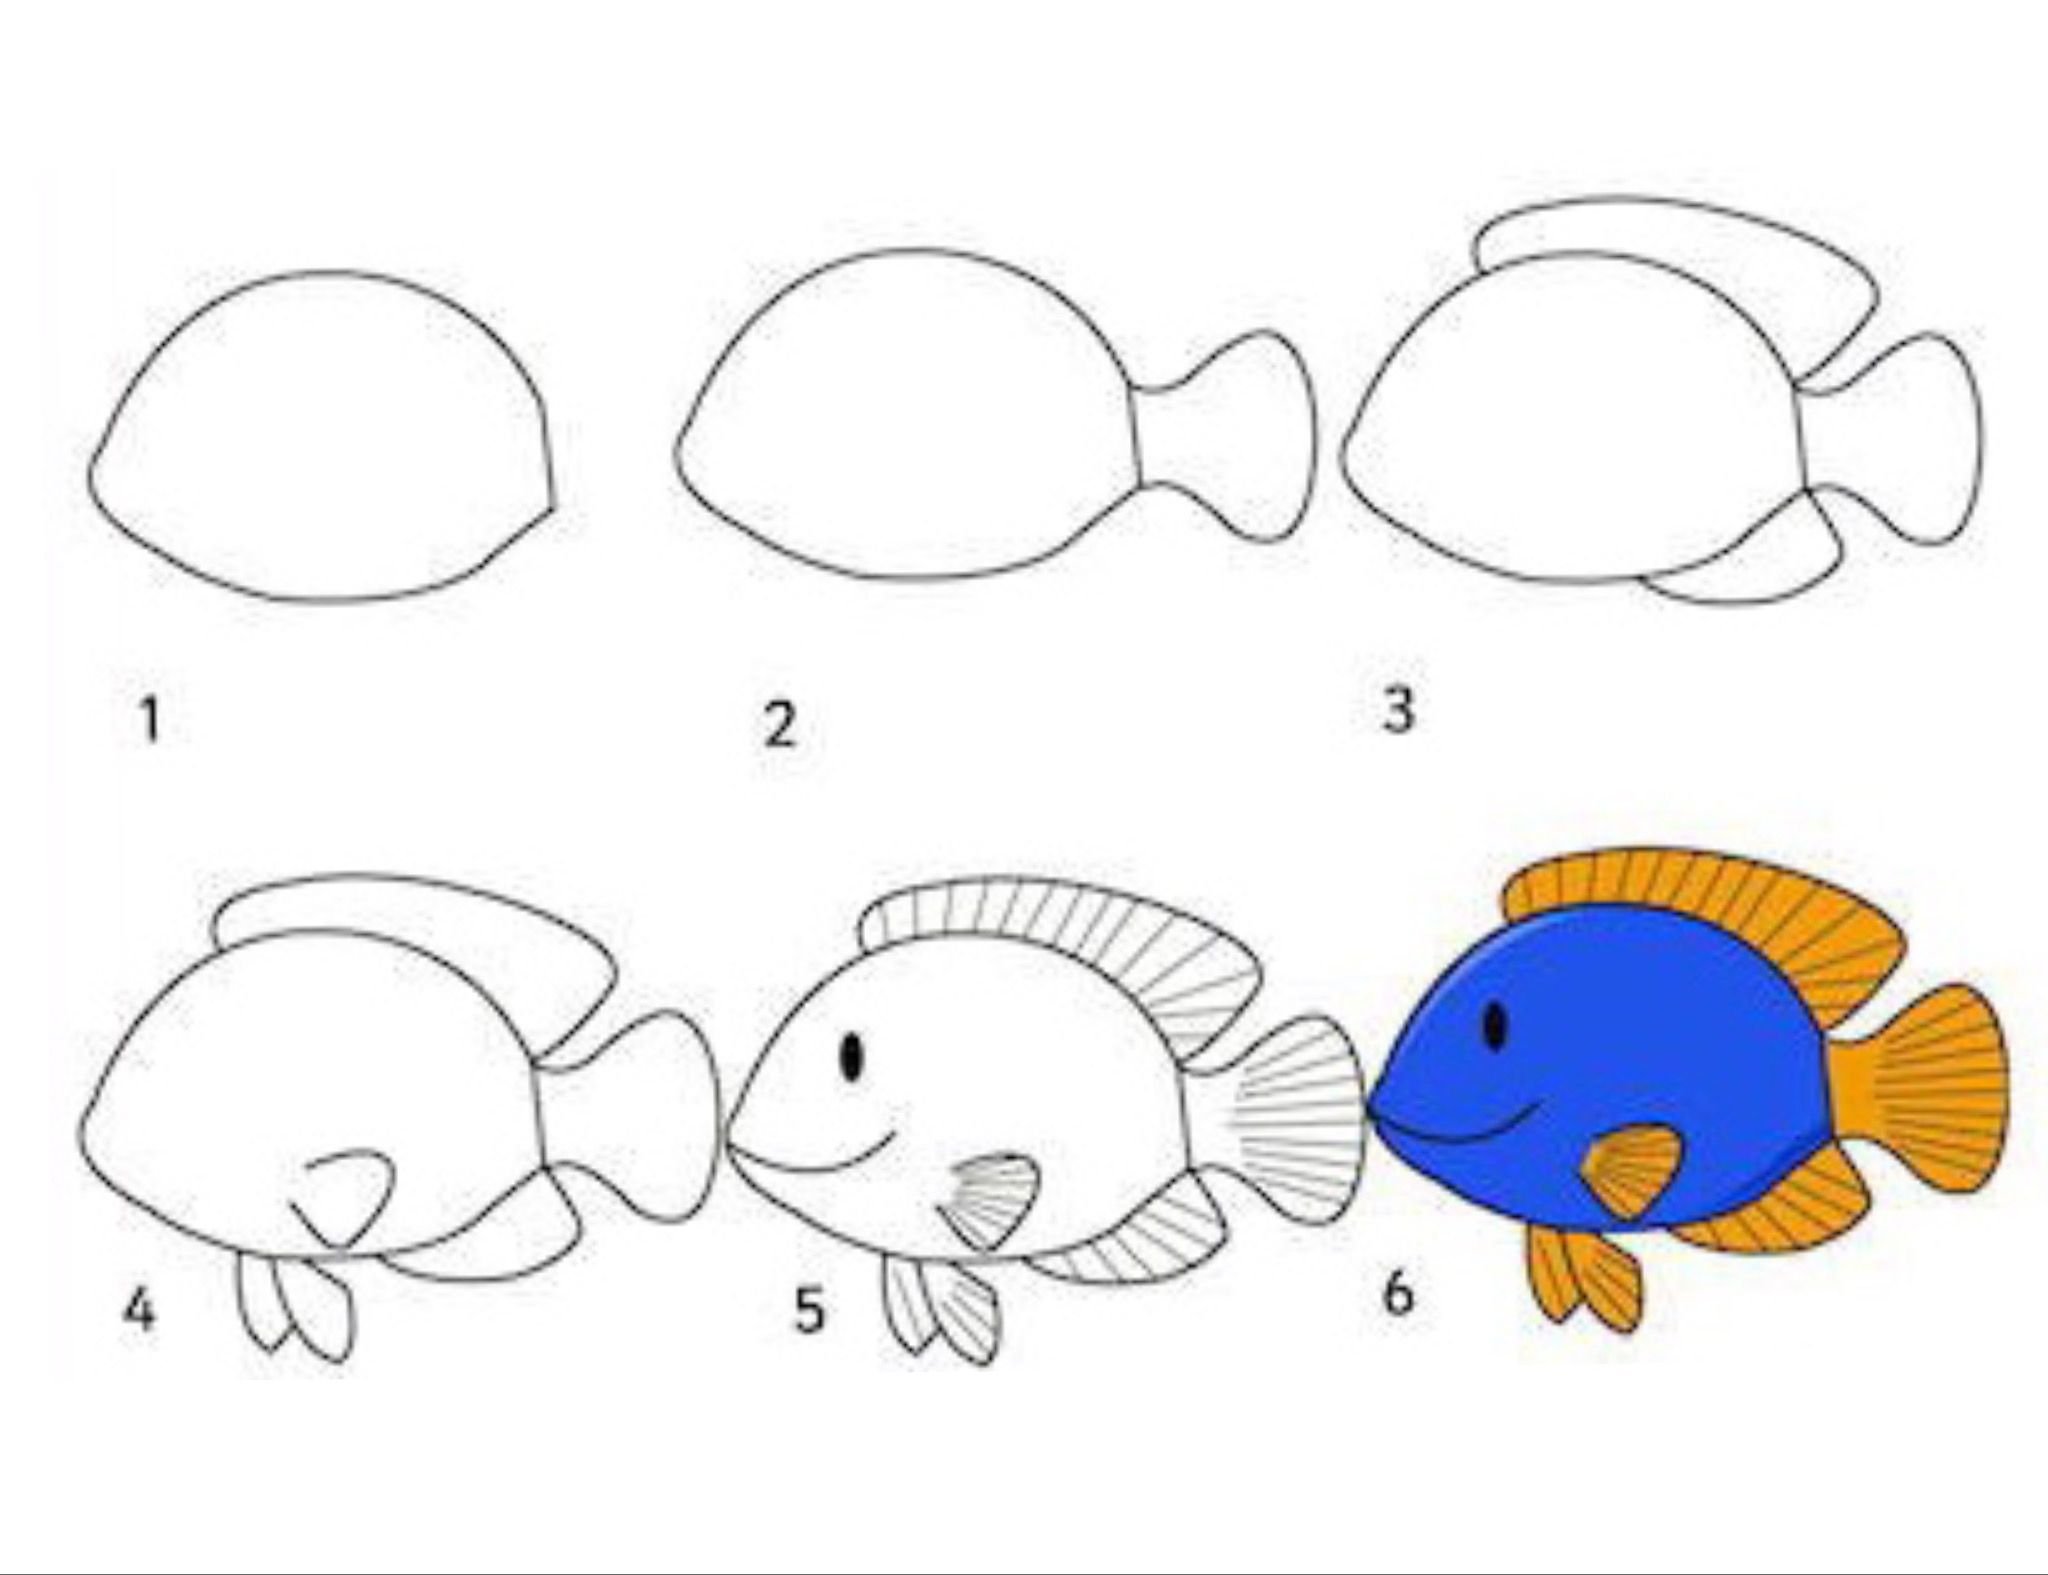 Схема рисования рыбы для детей